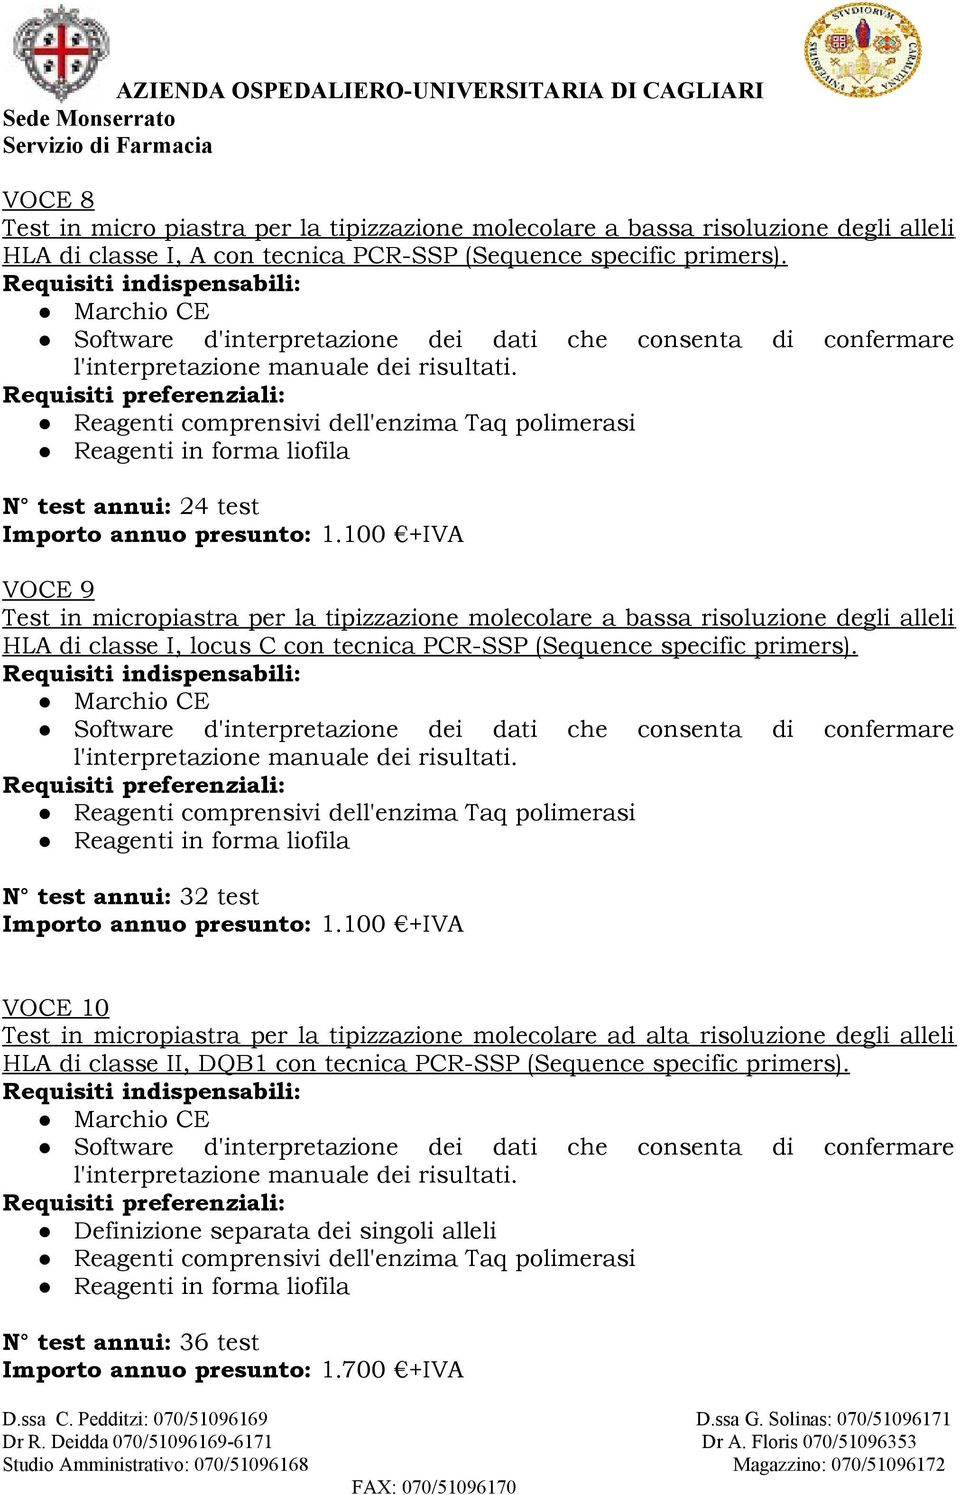 100 +IVA VOCE 9 HLA di classe I, locus C con tecnica PCR-SSP (Sequence specific primers). N test annui: 32 test Importo annuo presunto: 1.